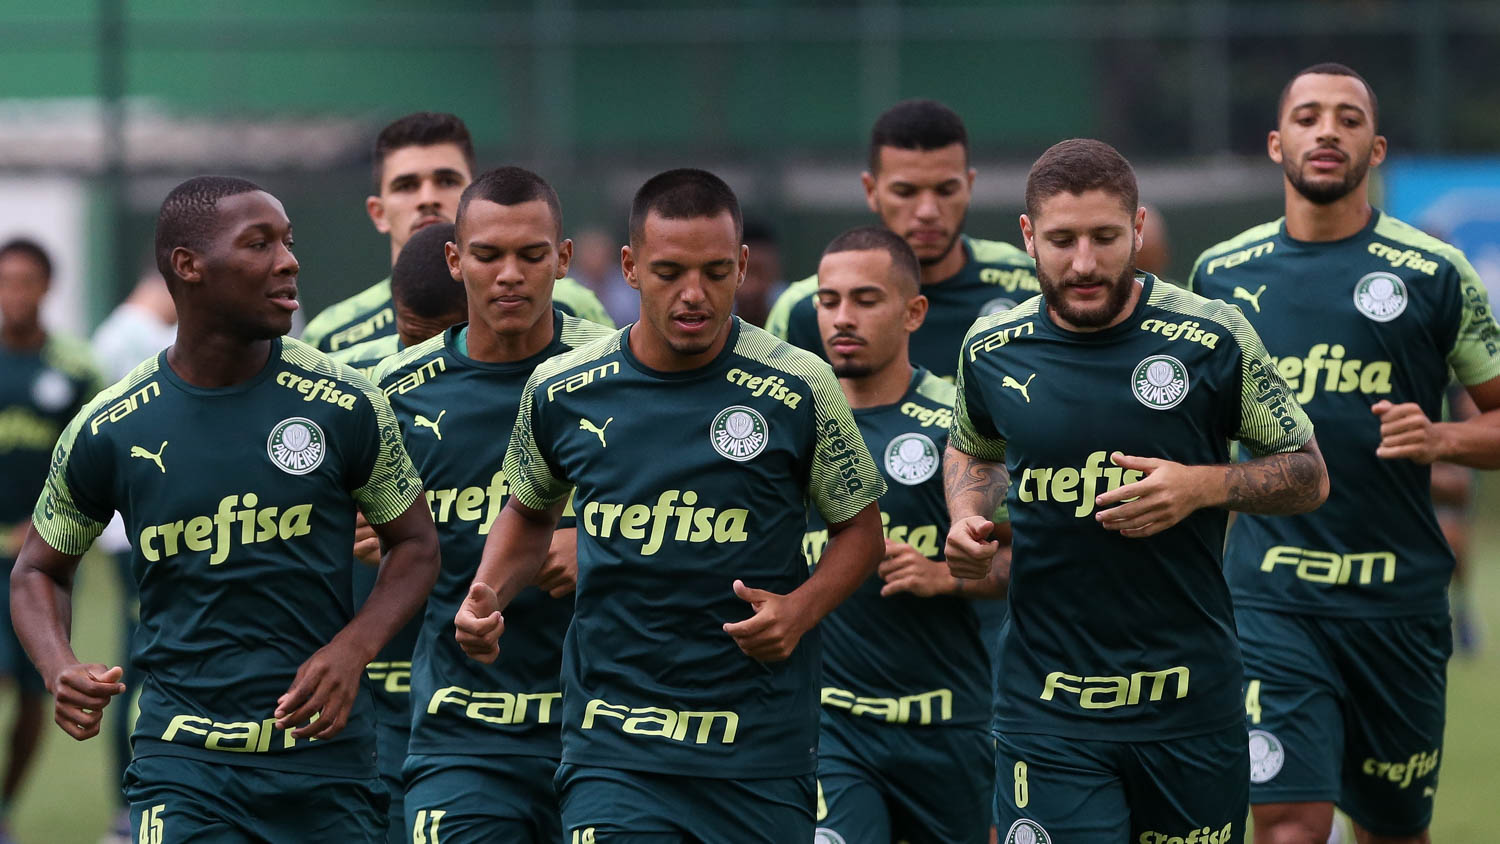 Palmeiras é eleito o melhor time do mundo de 2021 por órgão internacional  de estatística, palmeiras